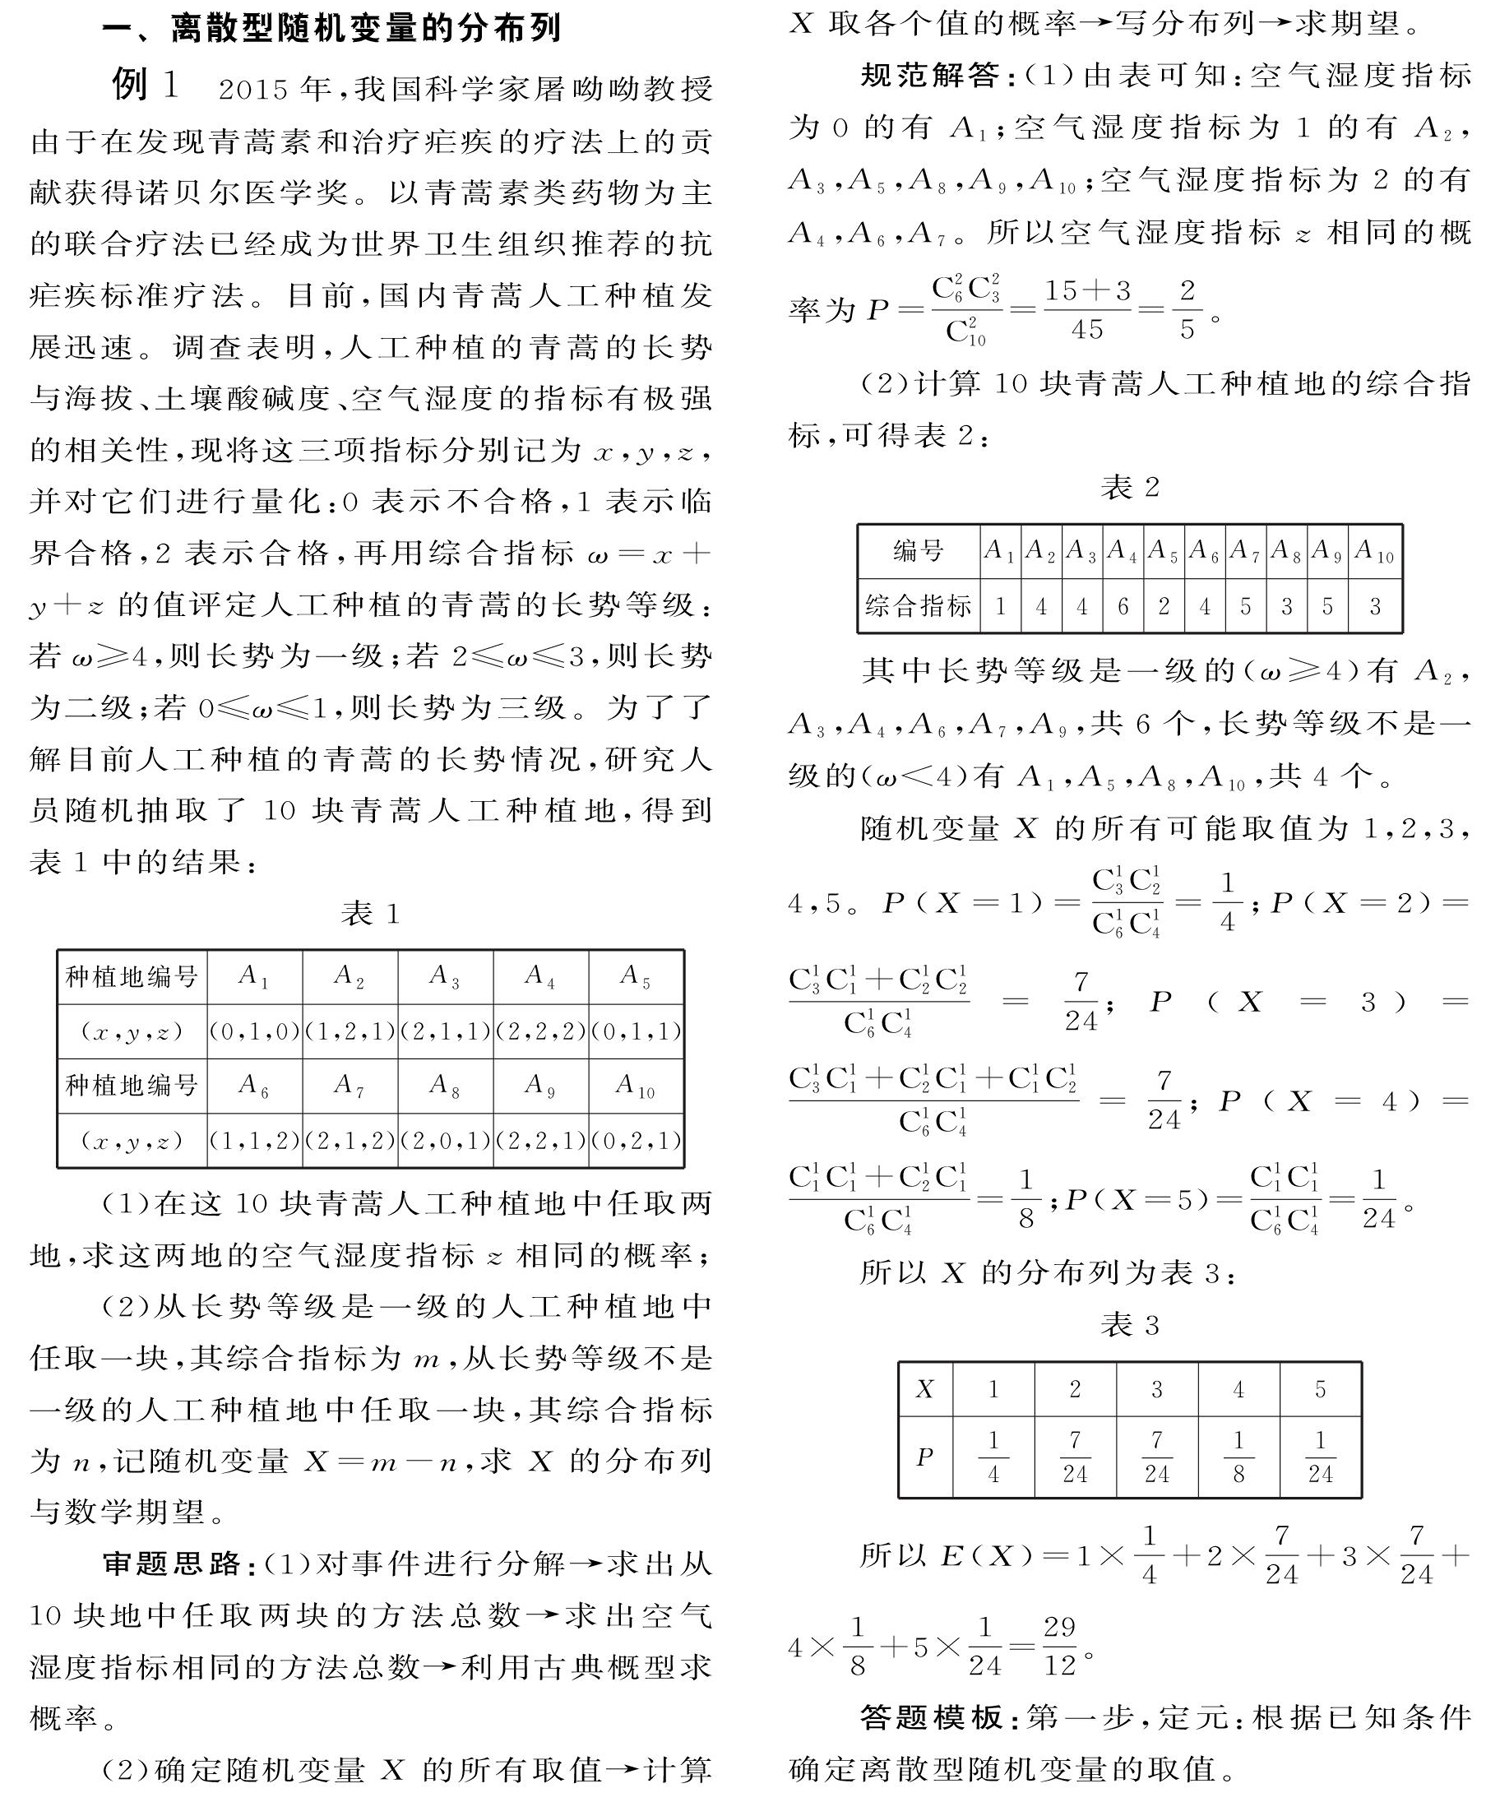 中学生数理化·高考数学